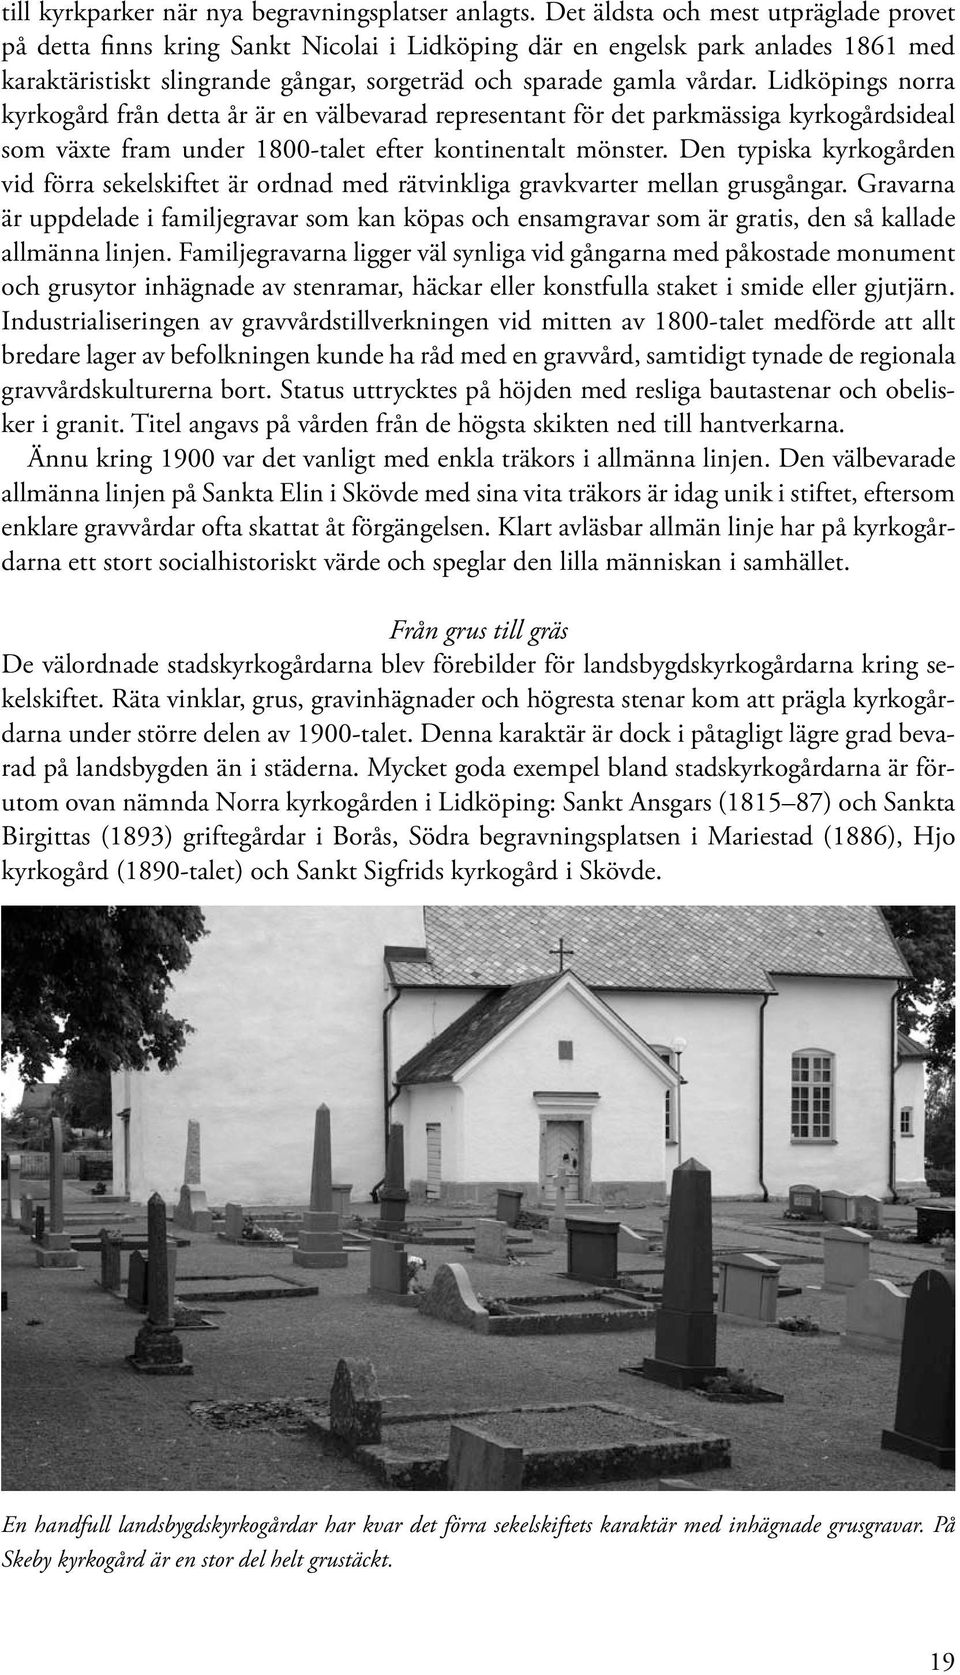 Lidköpings norra kyrkogård från detta år är en välbevarad representant för det parkmässiga kyrkogårdsideal som växte fram under 1800-talet efter kontinentalt mönster.